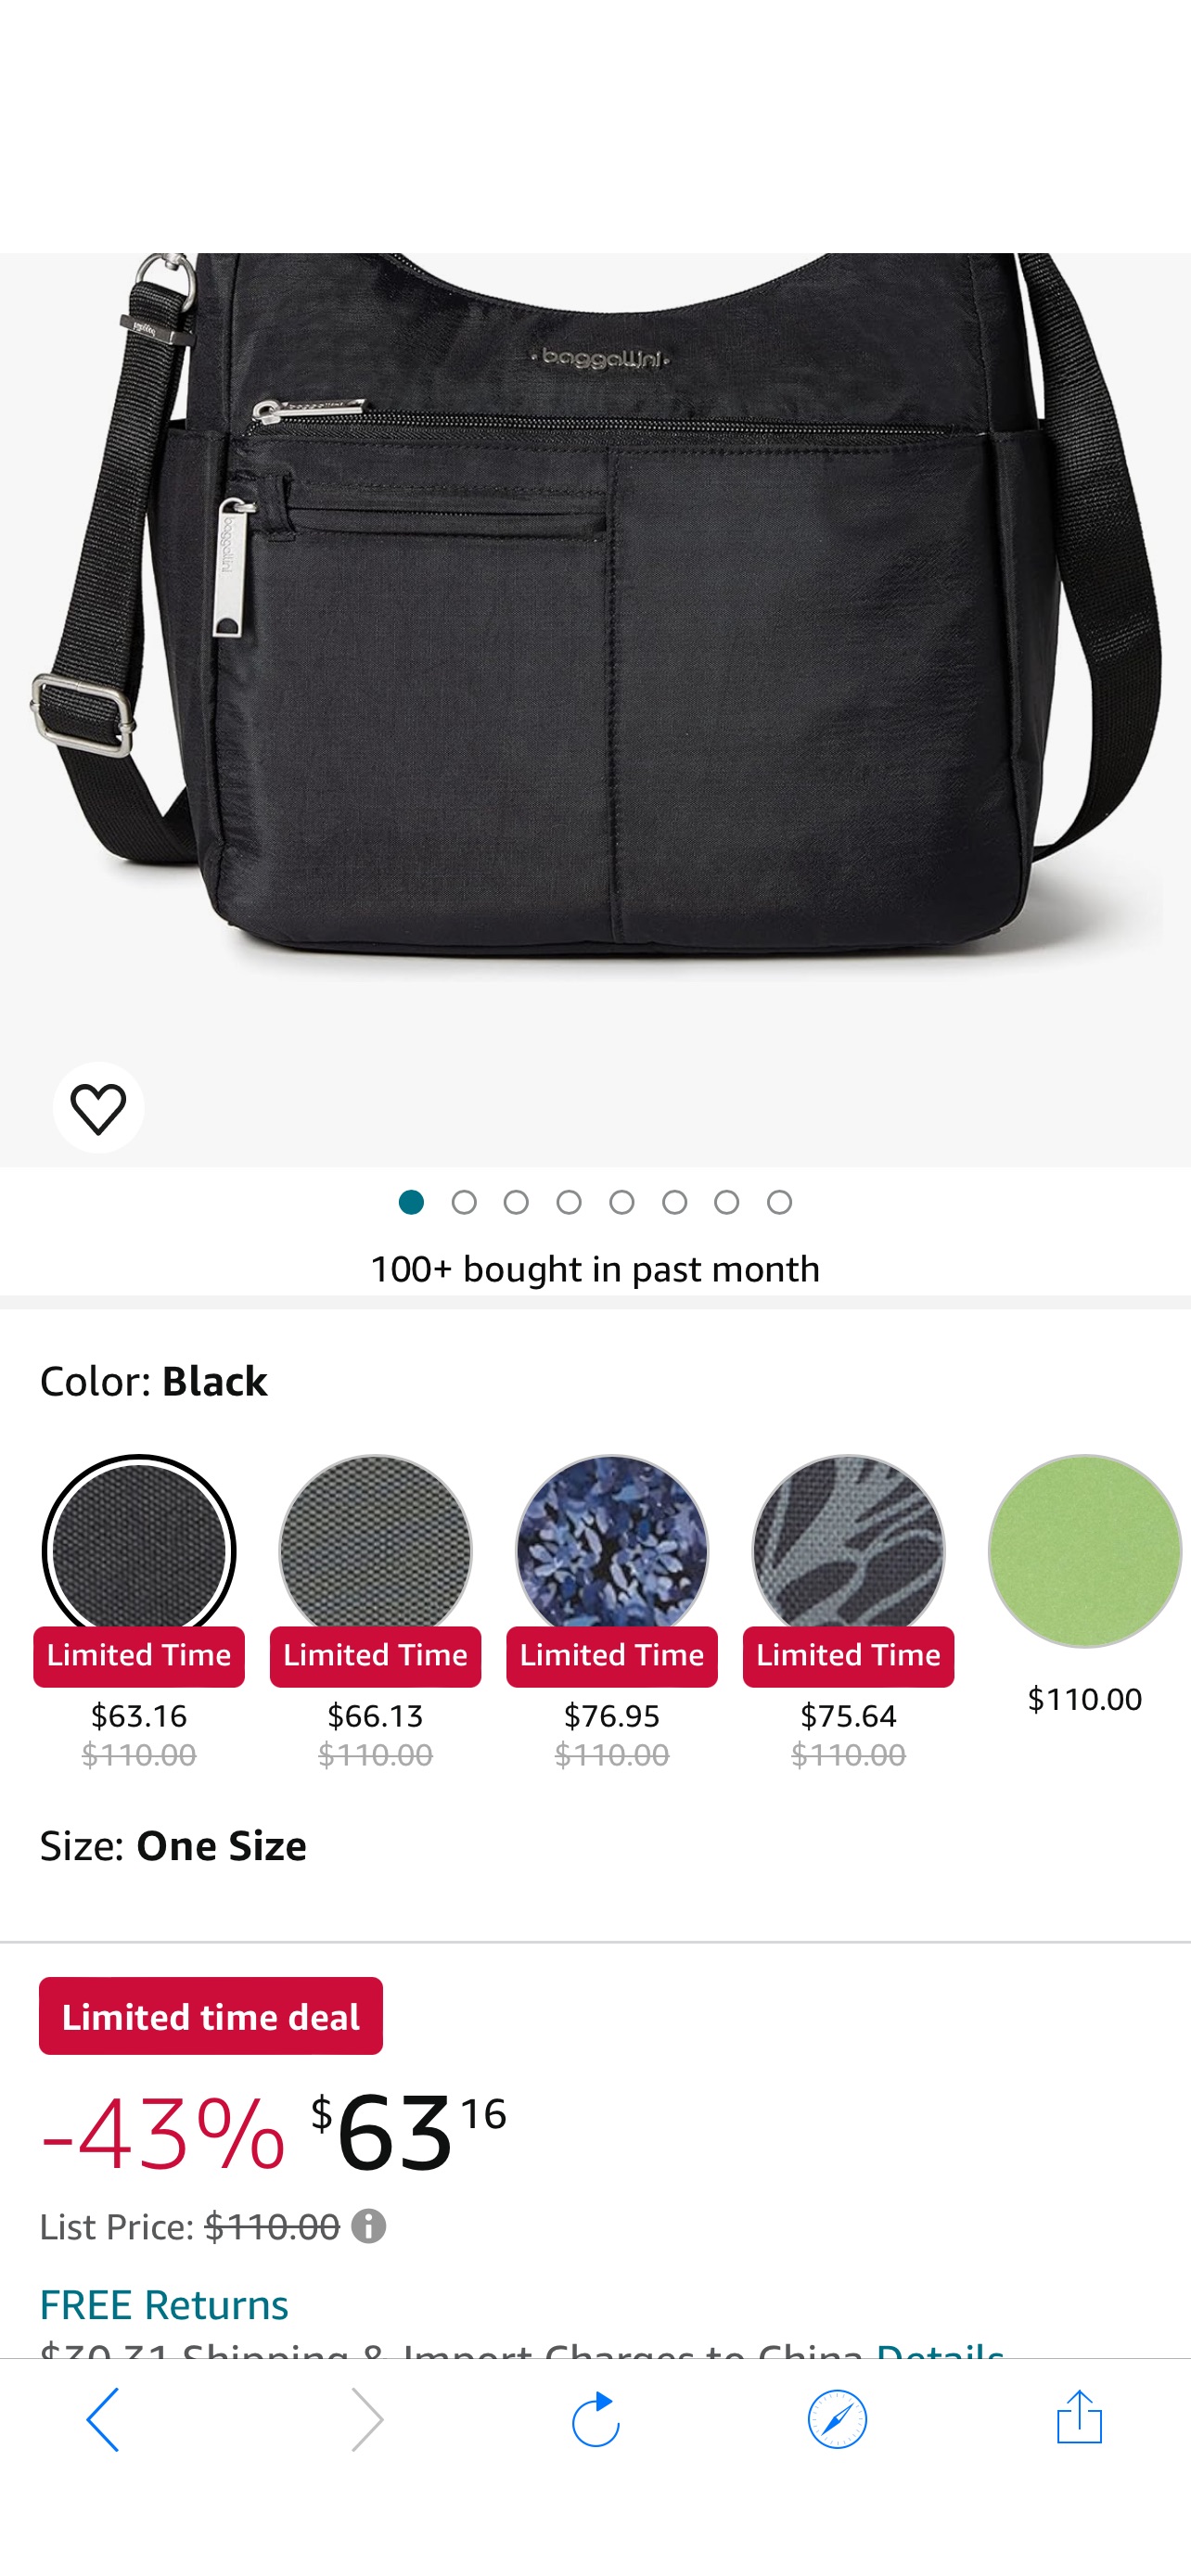 斜挎包Baggallini Securtex® Anti-theft Free Time Crossbody Bag Cross Body, Charcoal, One Size US: Handbags: Amazon.com